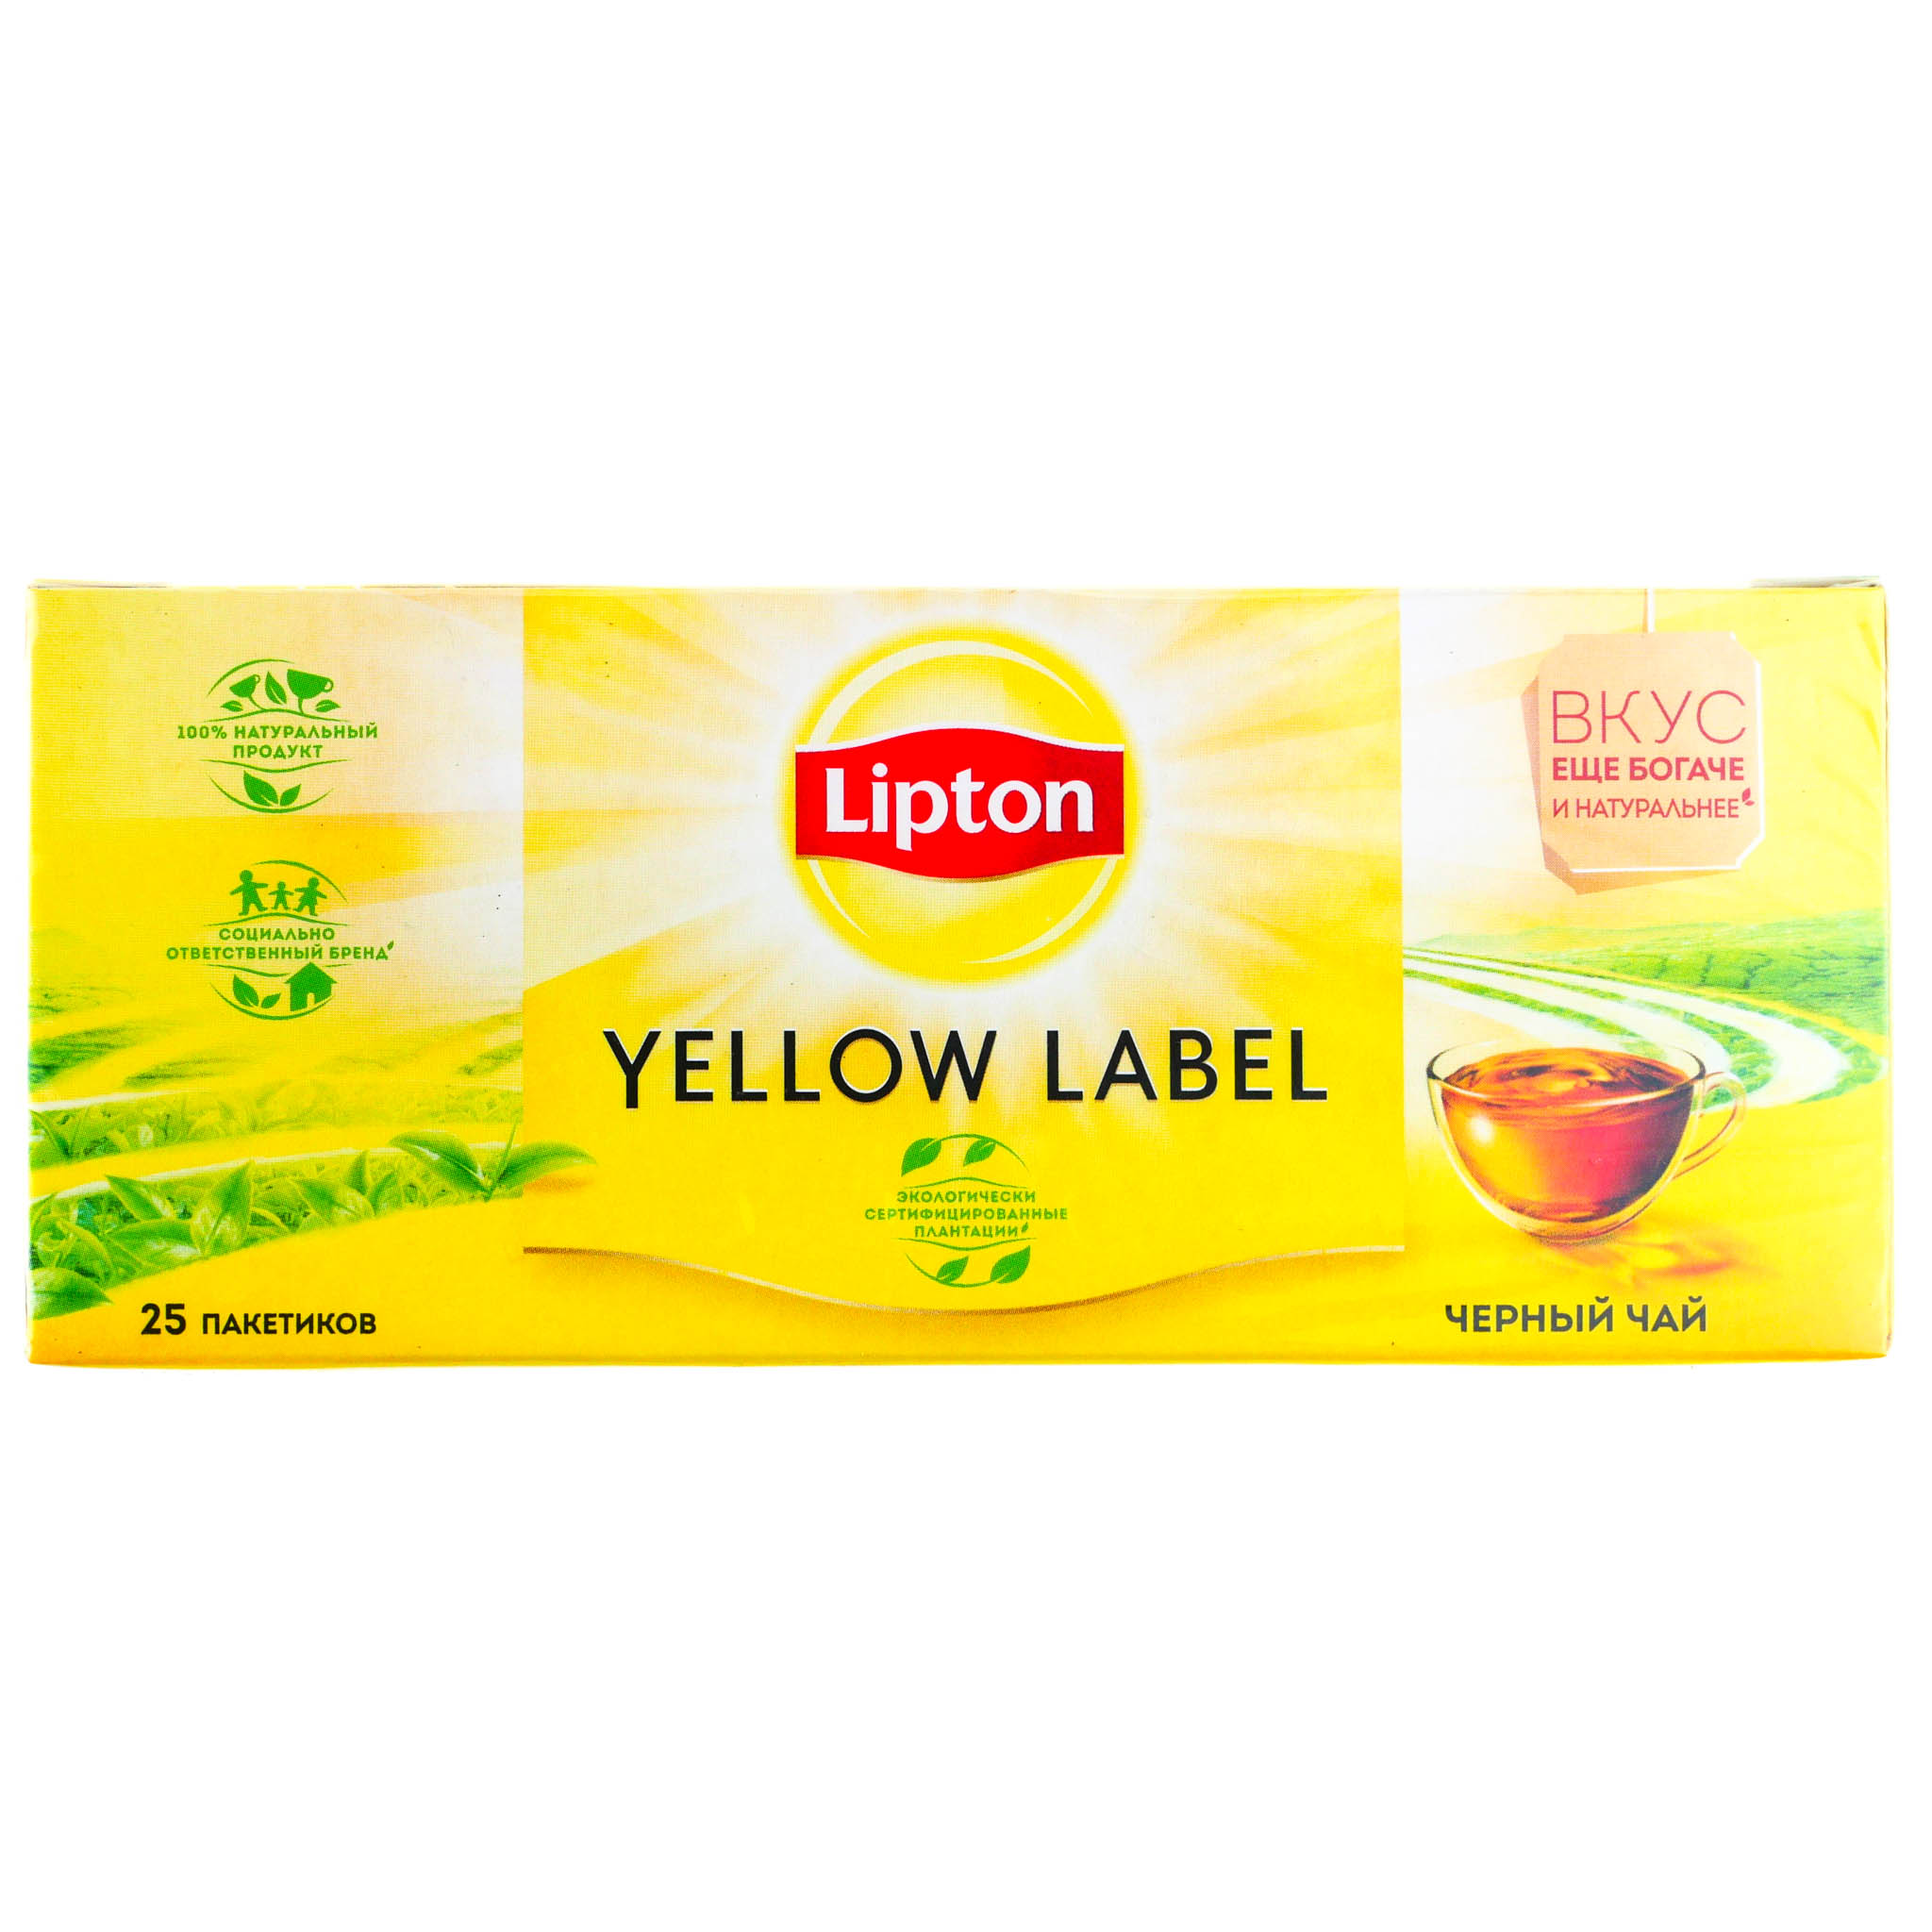 Домашний чай липтон. Чай Липтон Yellow Label 25 пак. Чай Липтон 25 пакетиков черный. Чай Lipton Yellow Label черный 25п*2г. Чай Lipton Yellow Label черный 25 пакетиков.